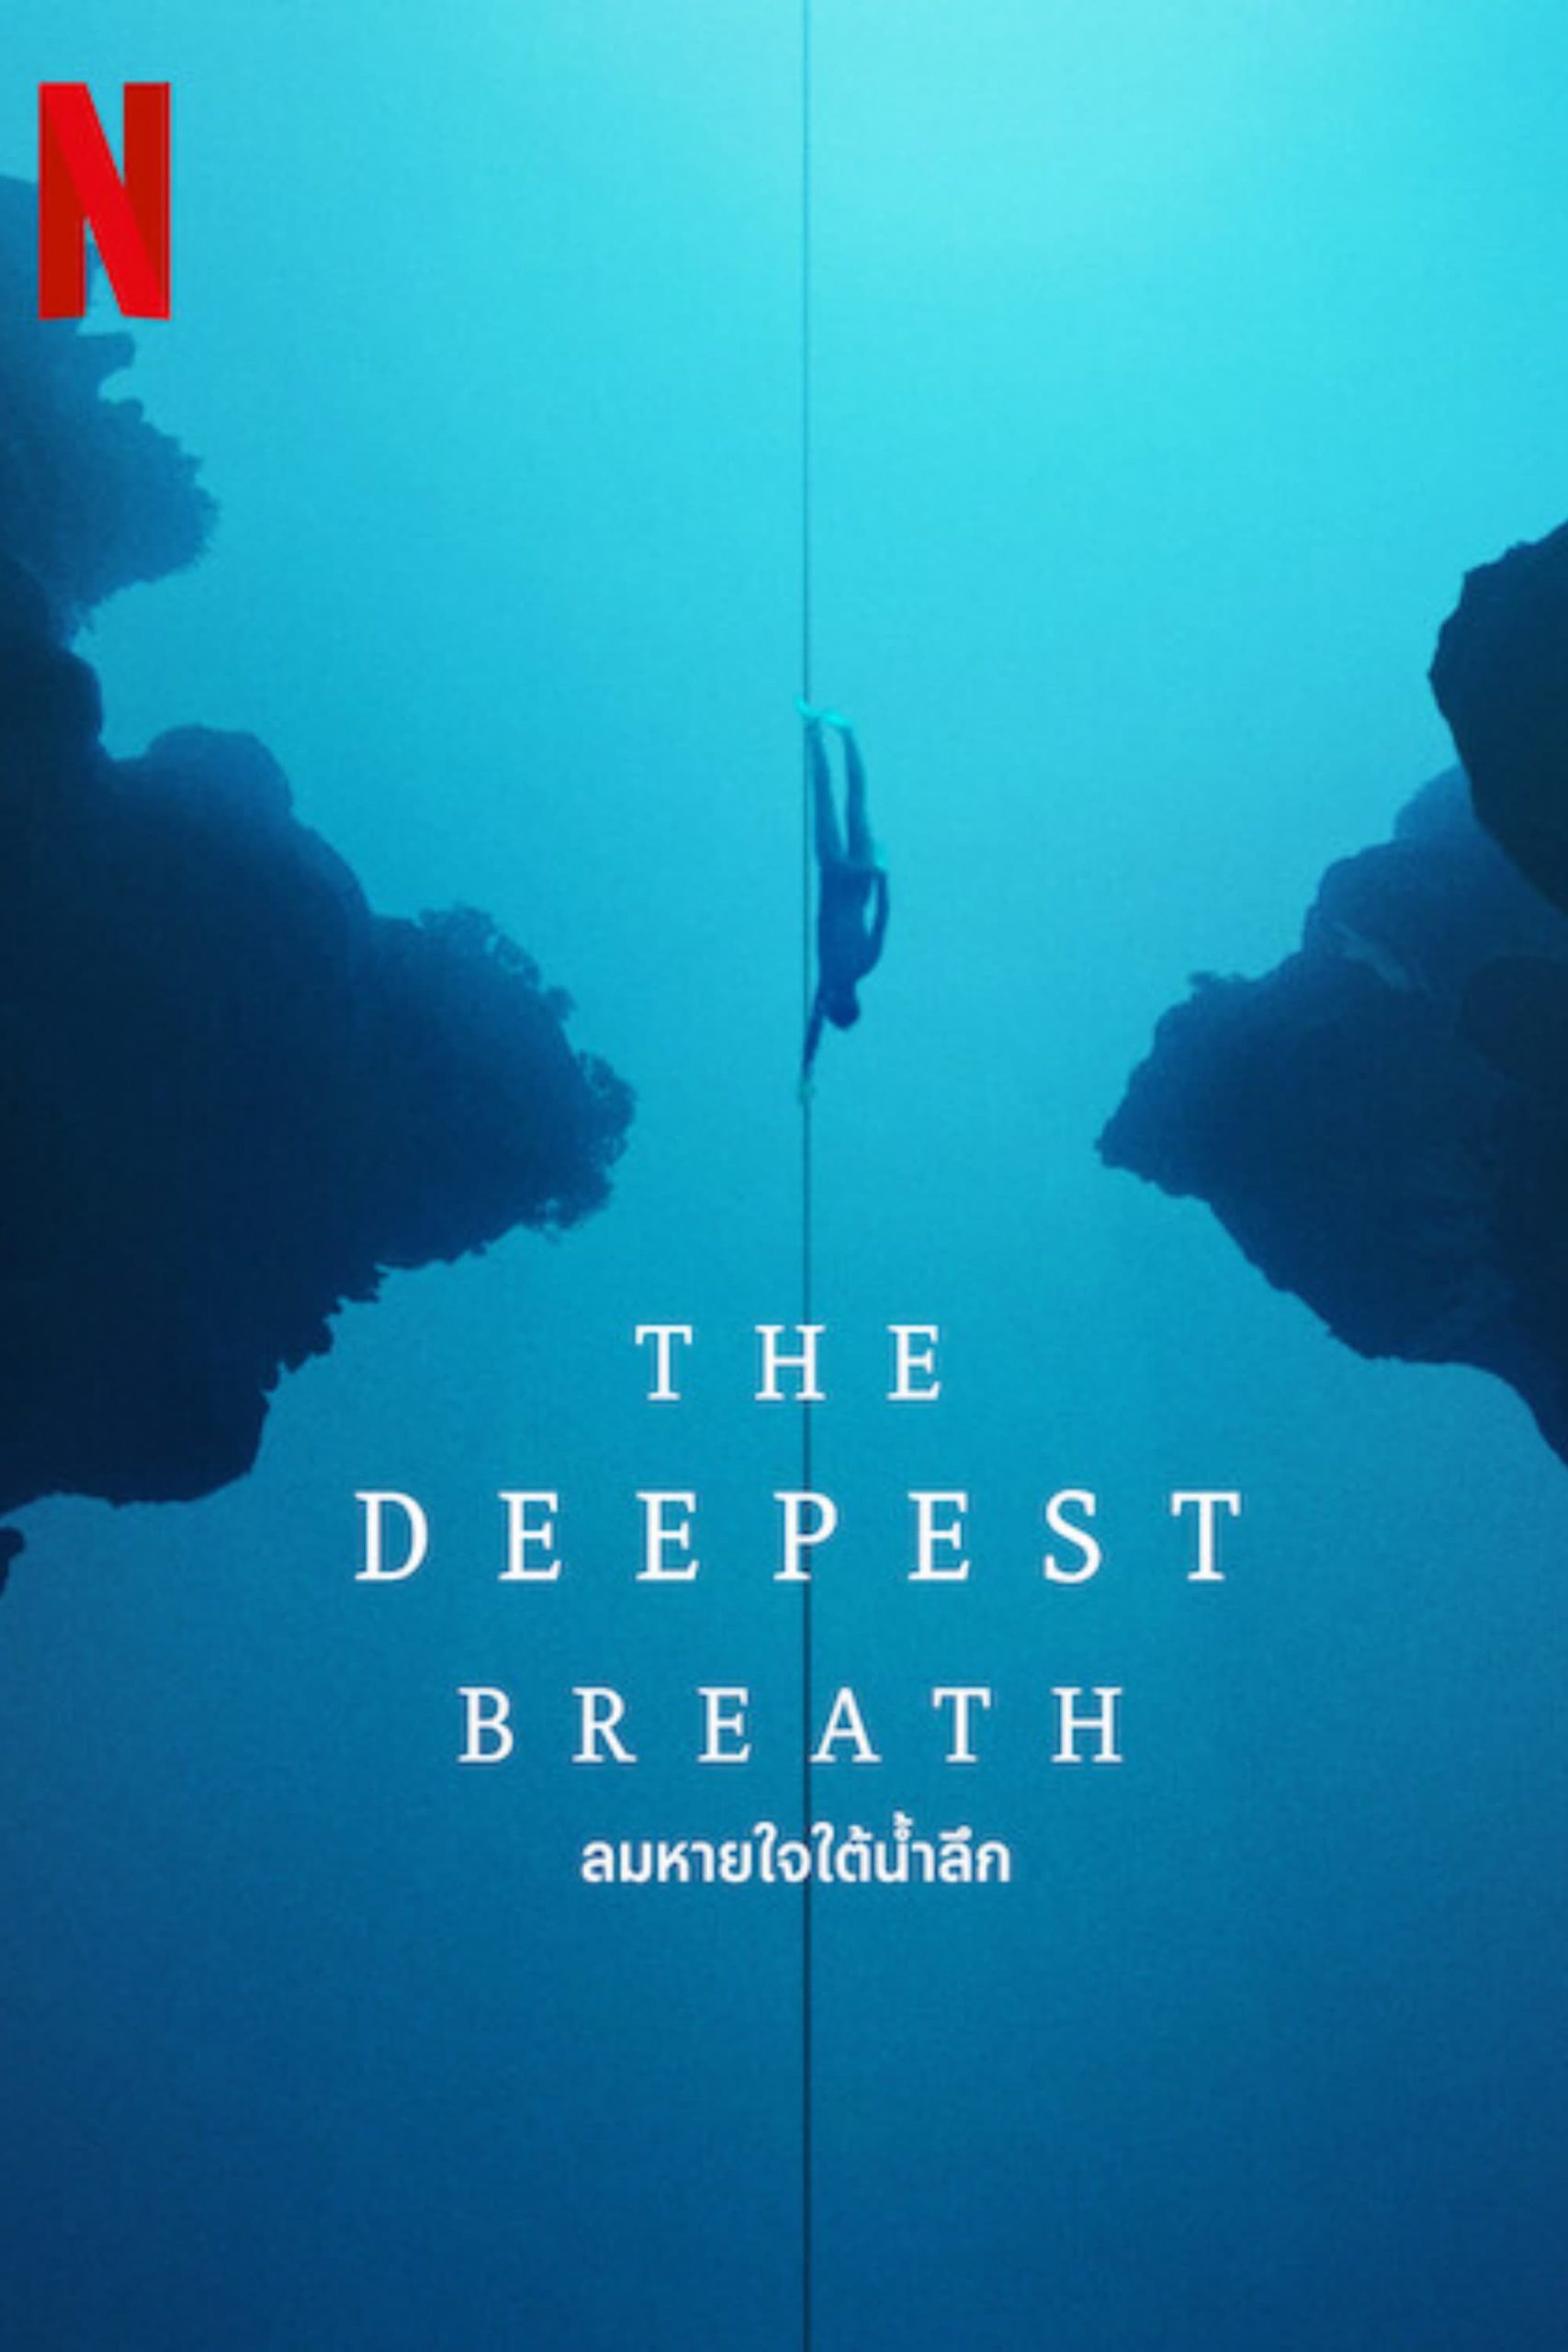 ดูหนังออนไลน์ฟรี The Deepest Breath ลมหายใจใต้น้ำลึก